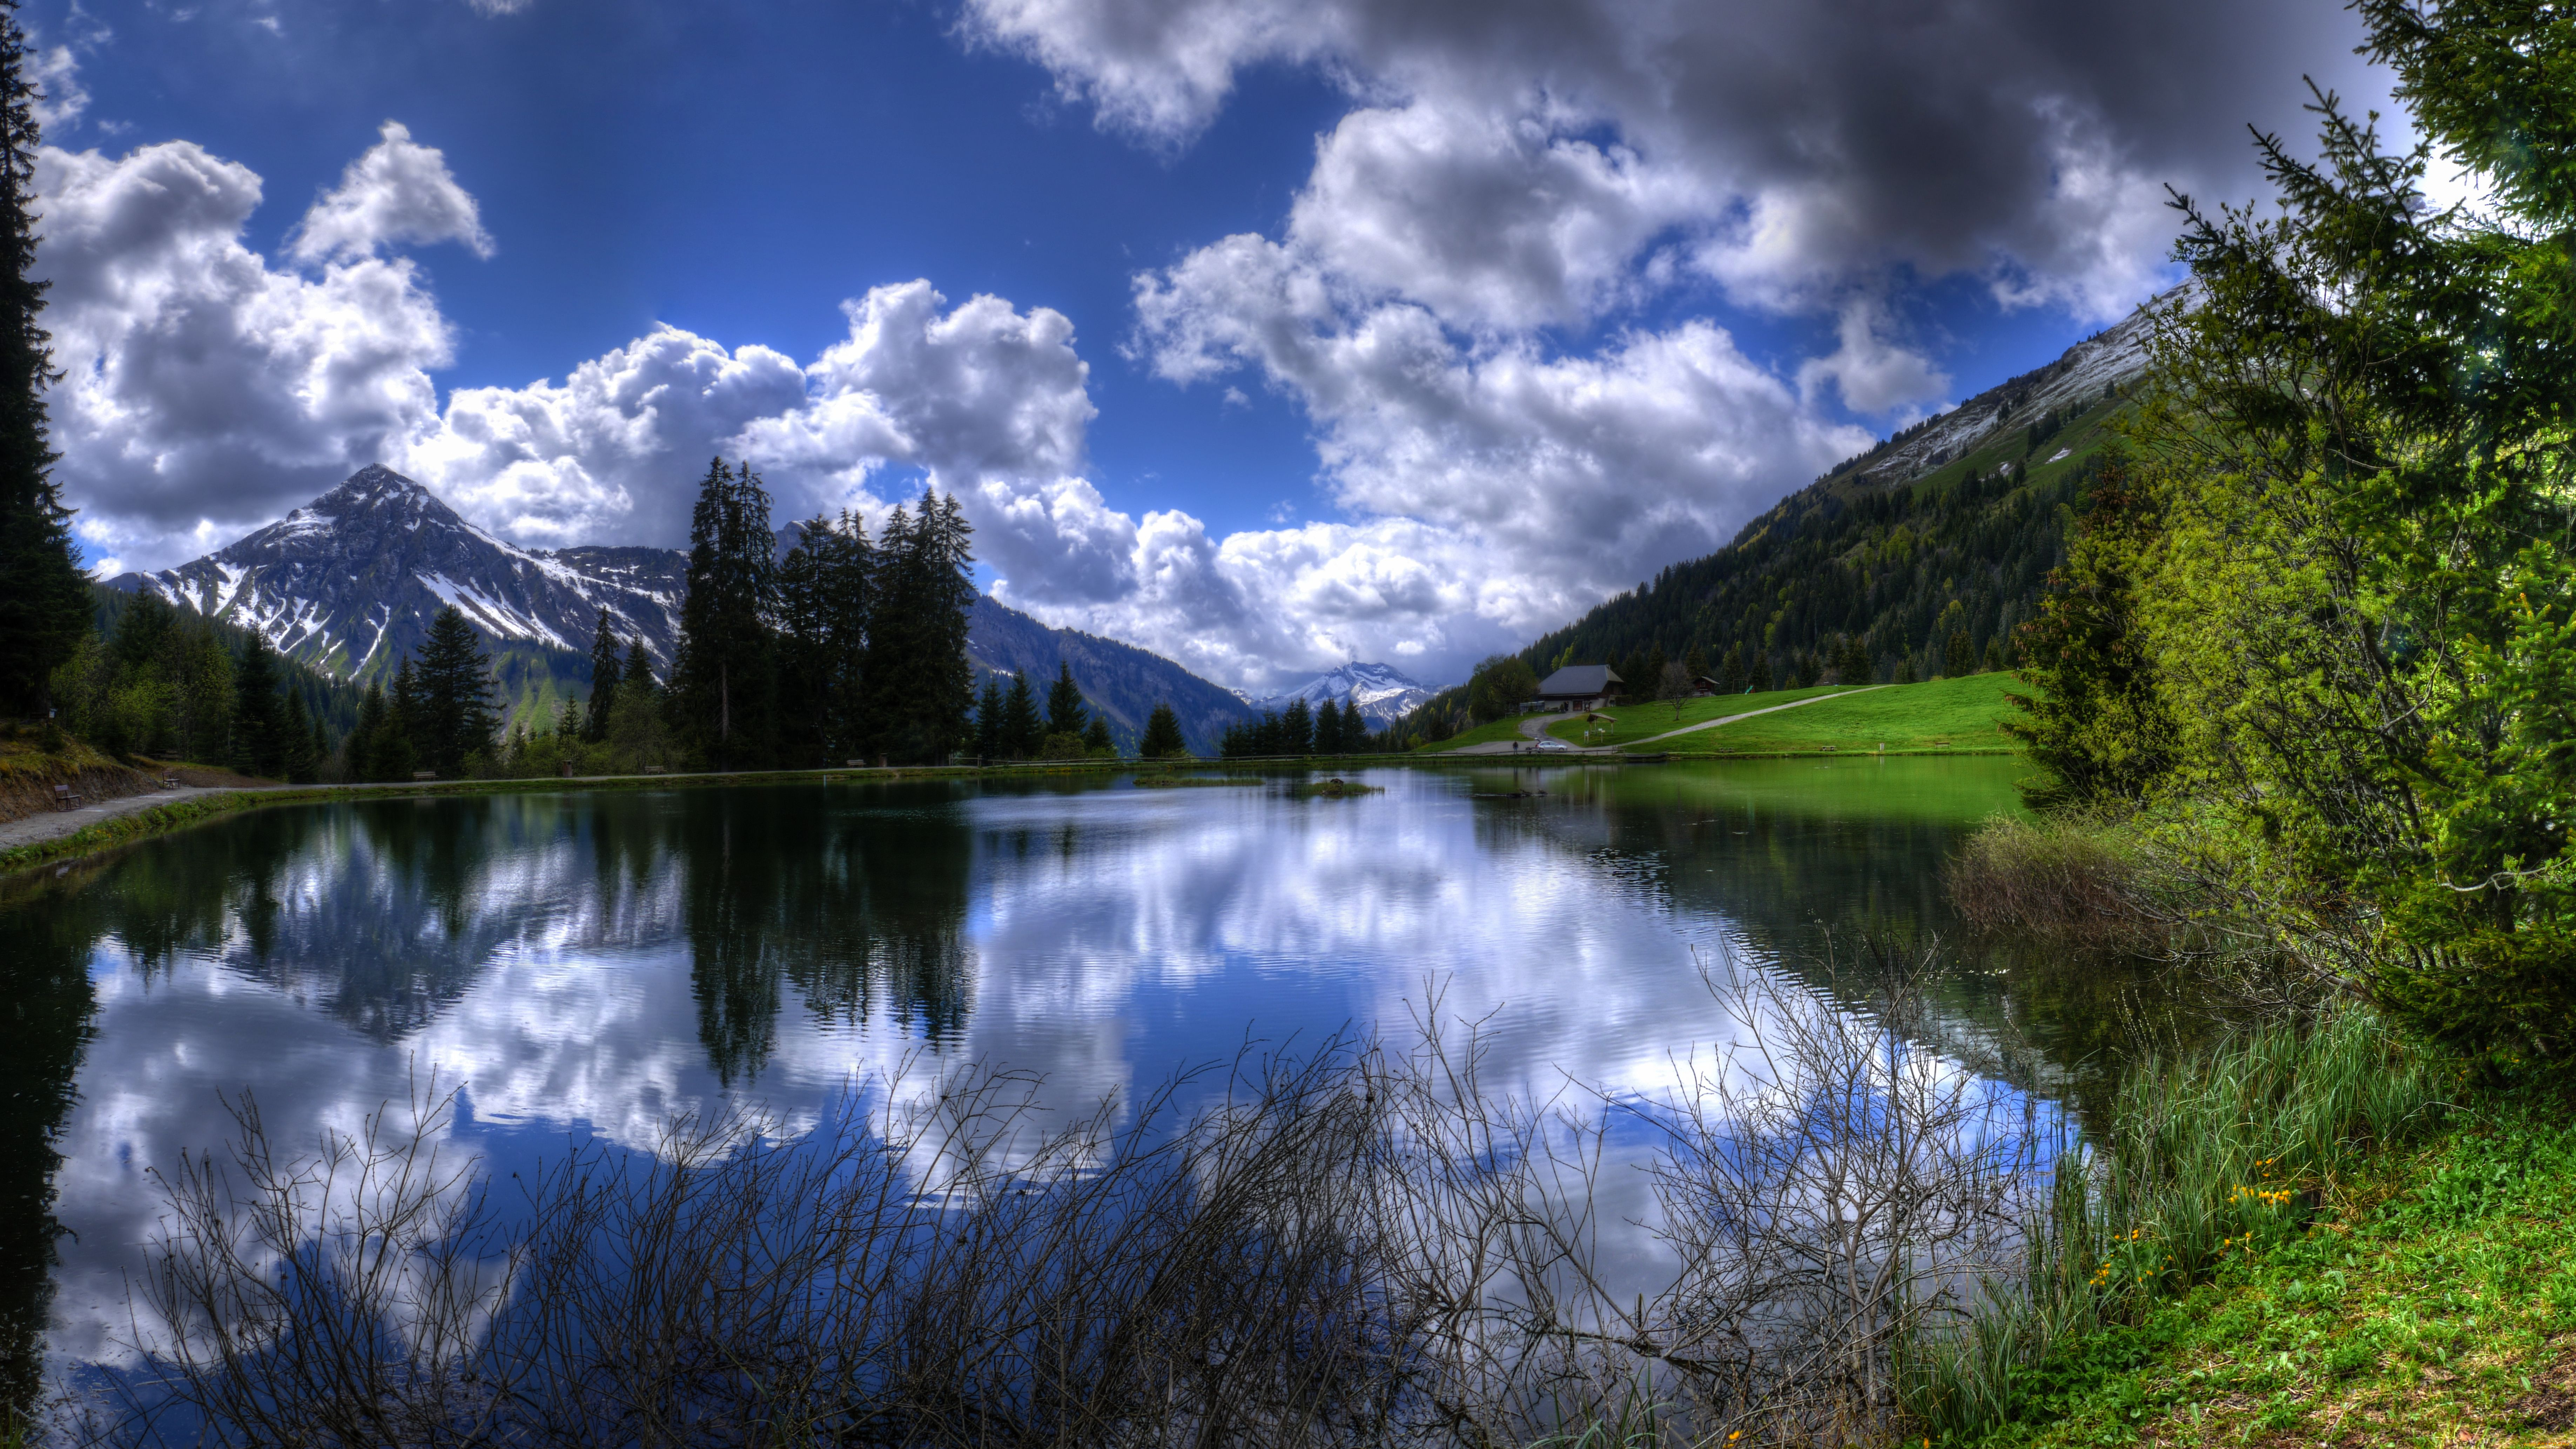 Лучшие обои фото на телефон. Природа. Озеро в горах. Красивый пейзаж. Красивые пейзажи природы.